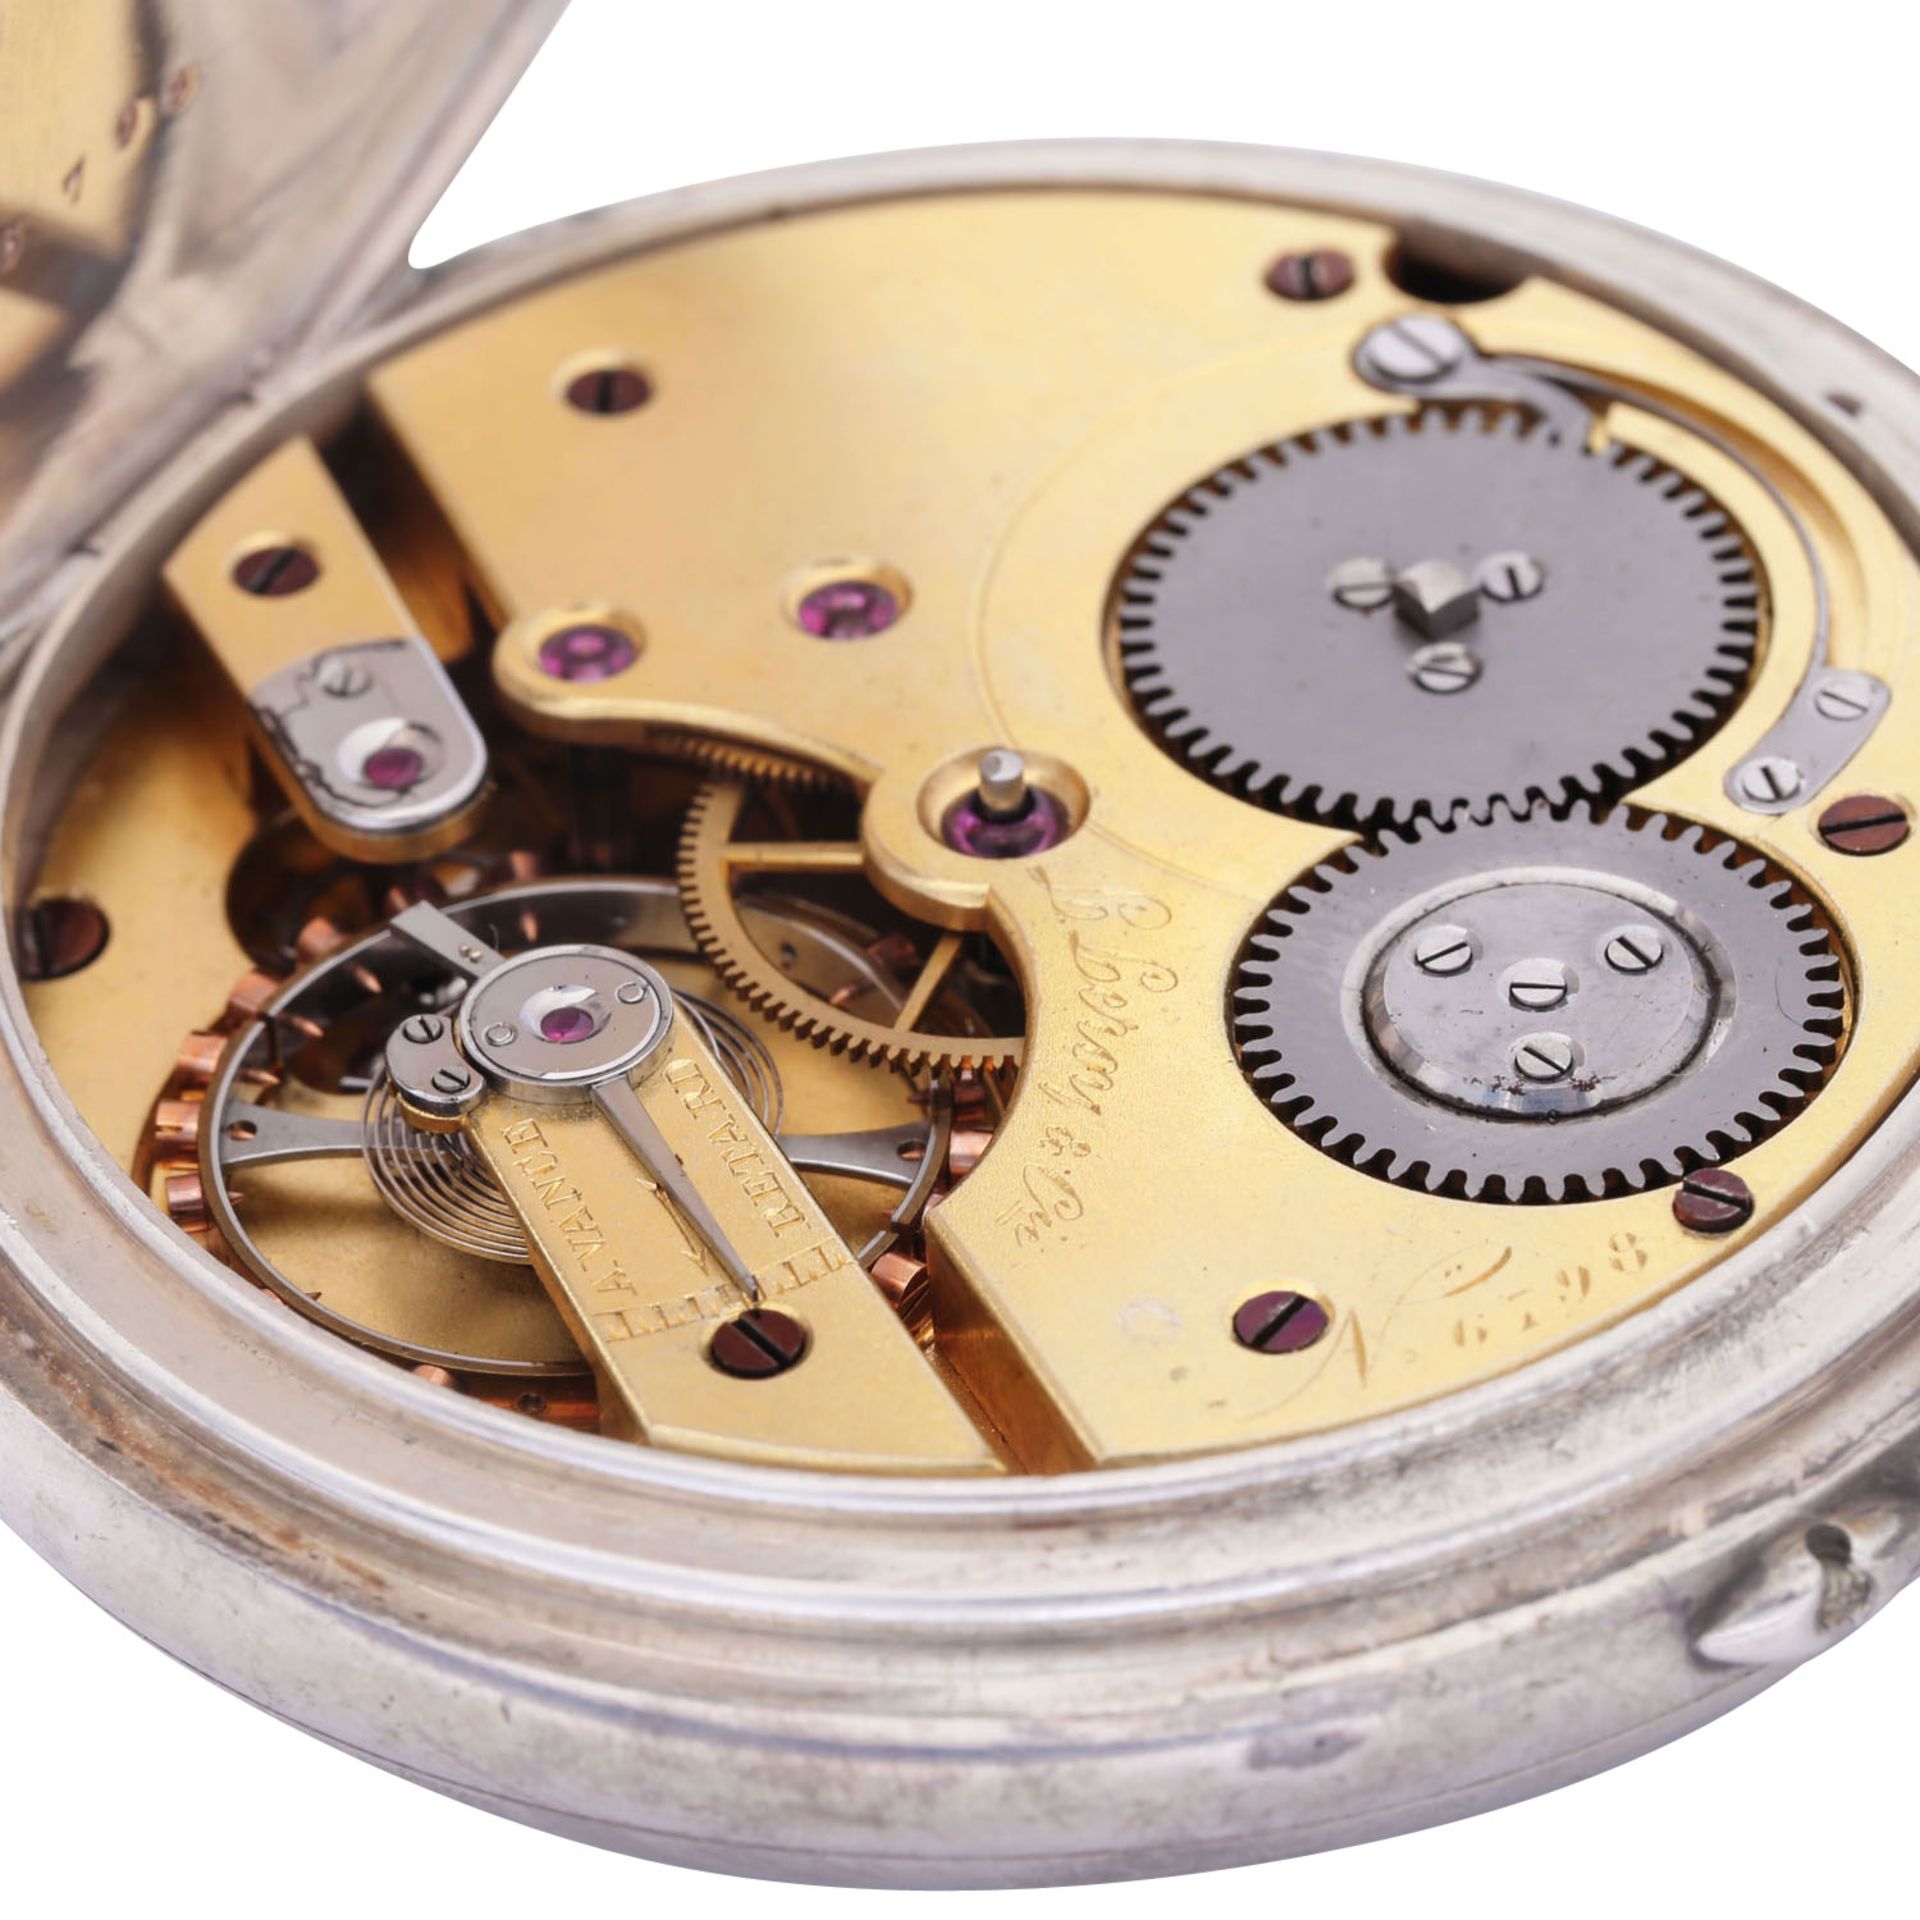 L. LEROY & Cie. Paris sehr seltener, großer und schwerer Taschenuhr Chronometer. Frankreich. - Image 6 of 12